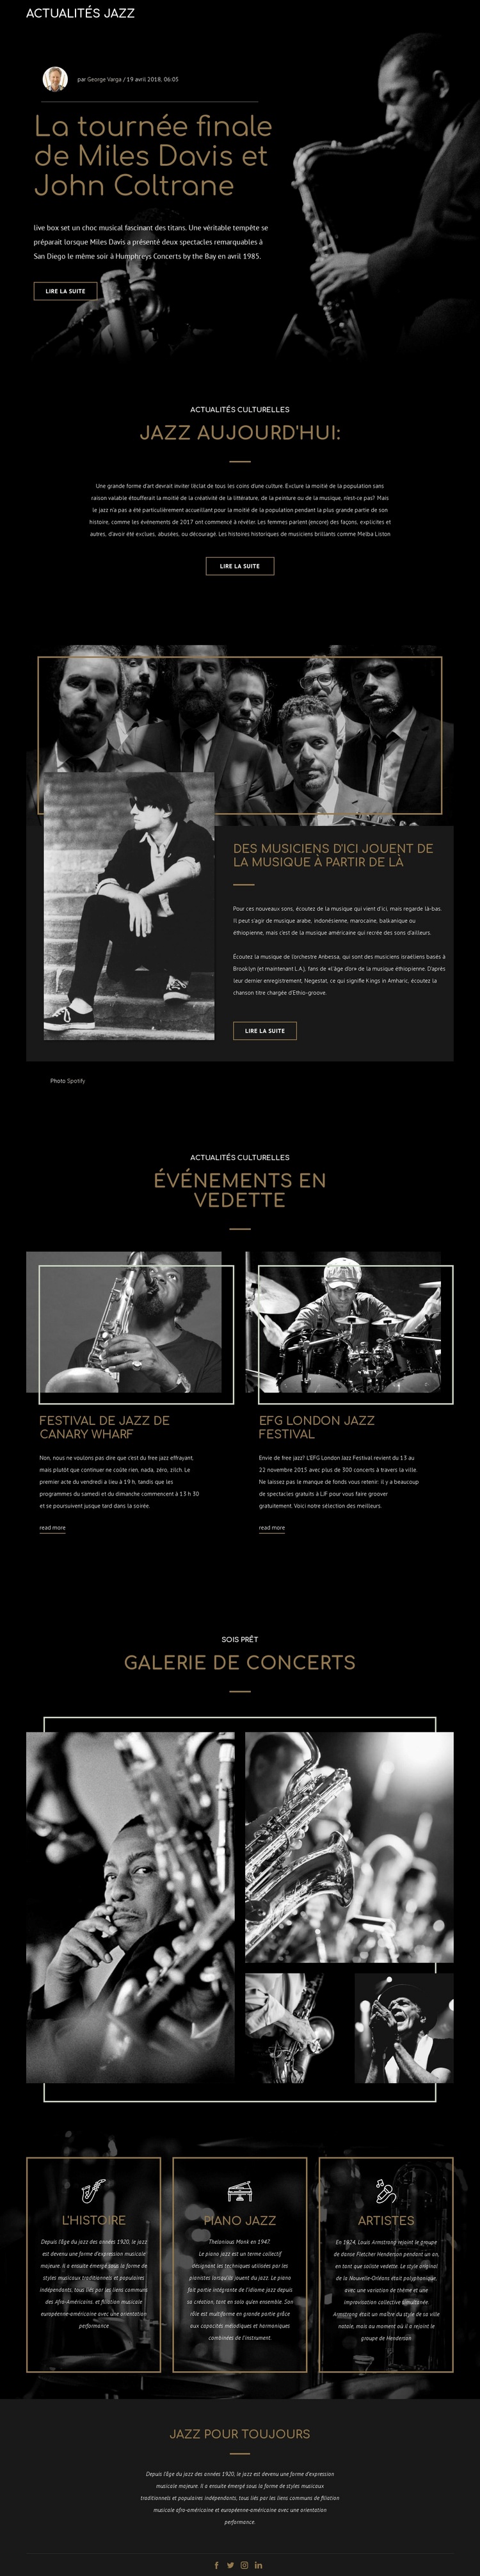 Legengs de la musique jazz Modèle HTML5